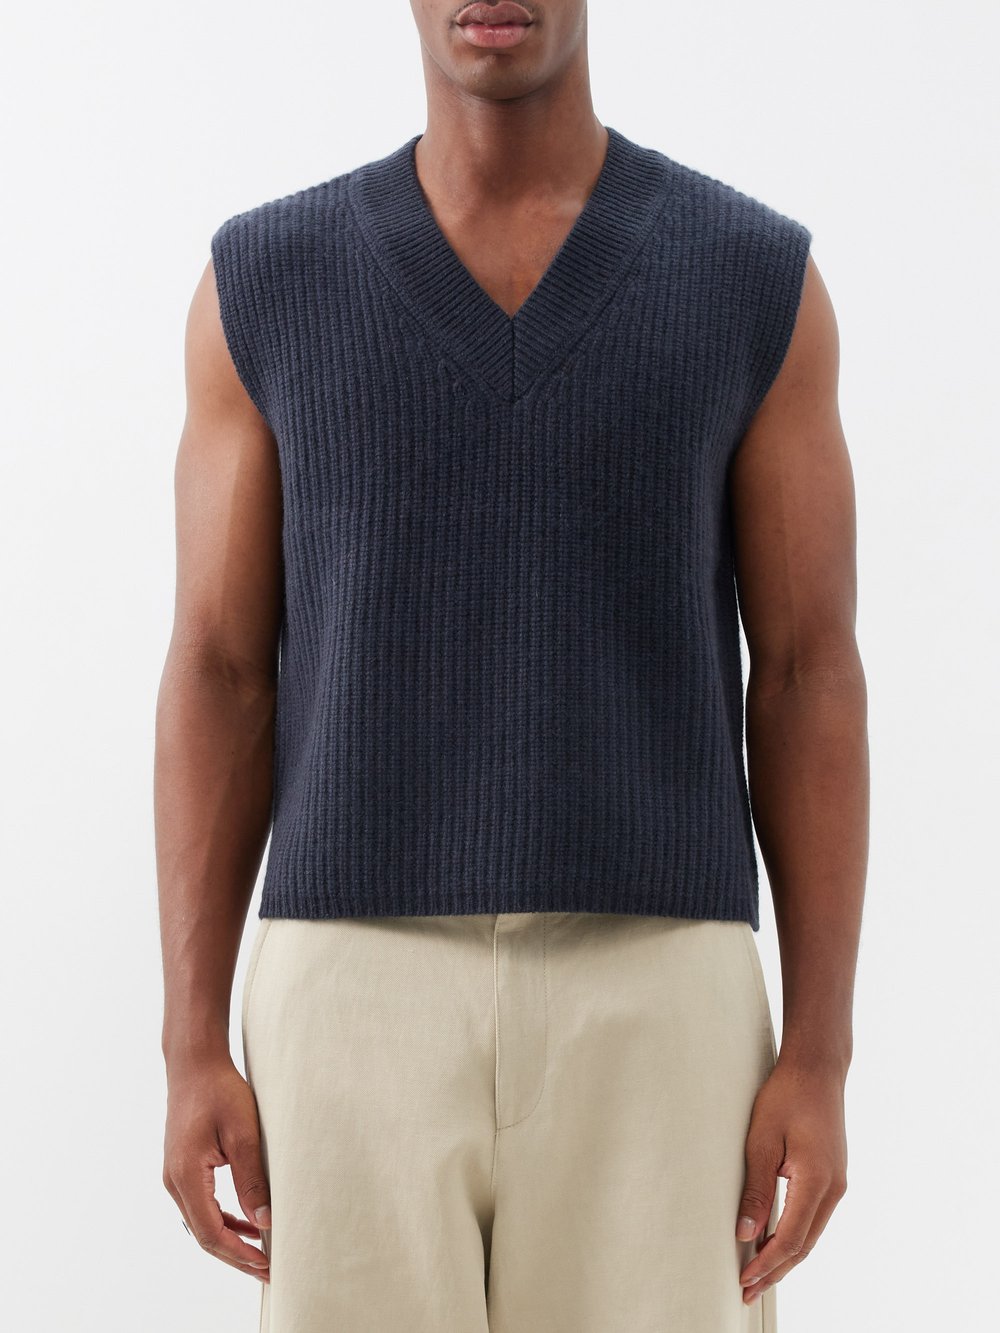 цена Кашемировый свитер-жилет mr southbank Arch4, серый